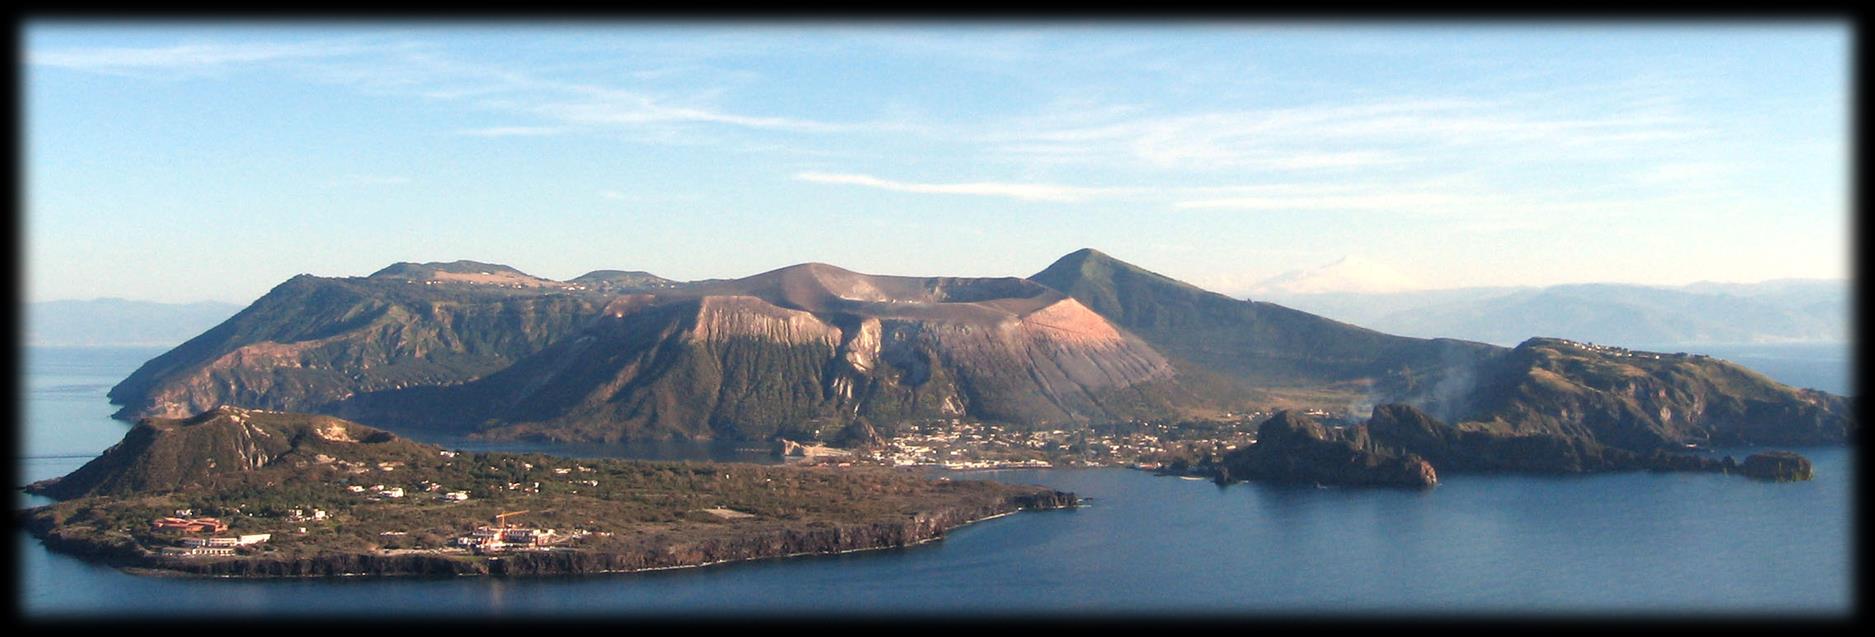 L'isola deve in effetti la sua esistenza alla fusione di alcuni vulcani di cui il più grande è il Vulcano della Fossa, più a nord c'è invece Vulcanello (123 m), collegato al resto dell'isola tramite